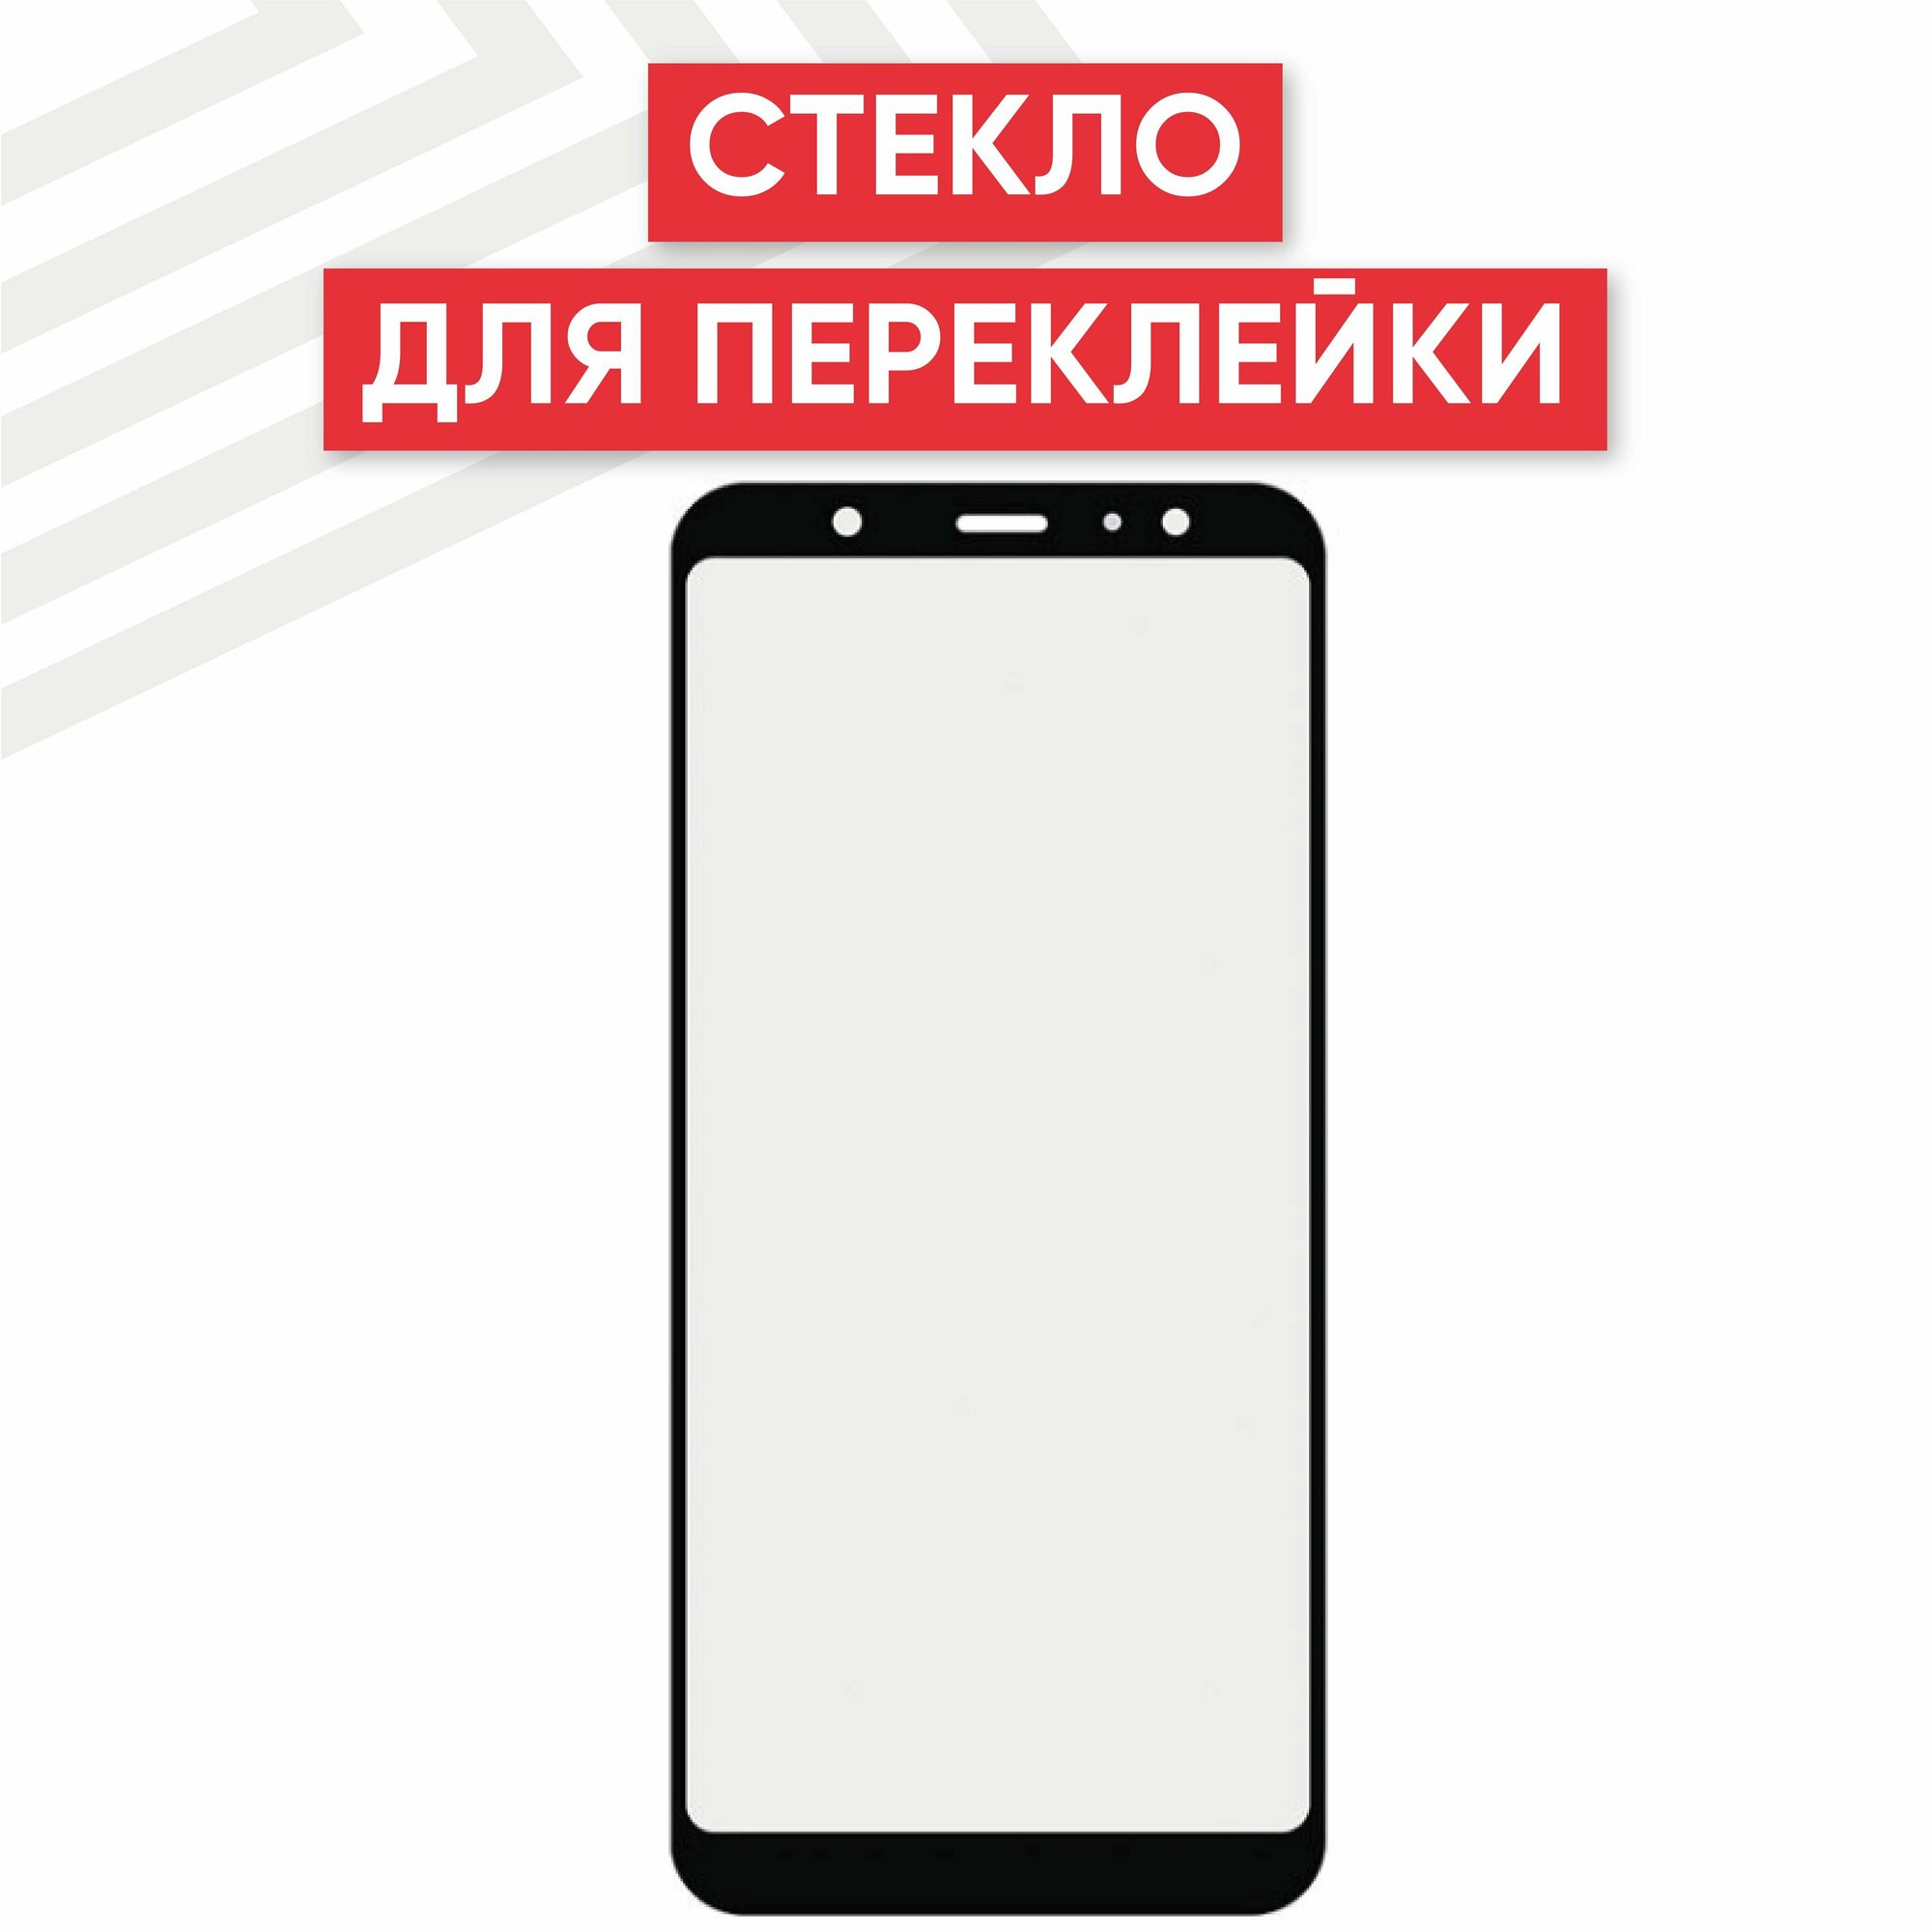 Стекло переклейки дисплея для мобильного телефона (смартфона) Samsung Galaxy A6 Plus 2018 (A605F), 6", черное